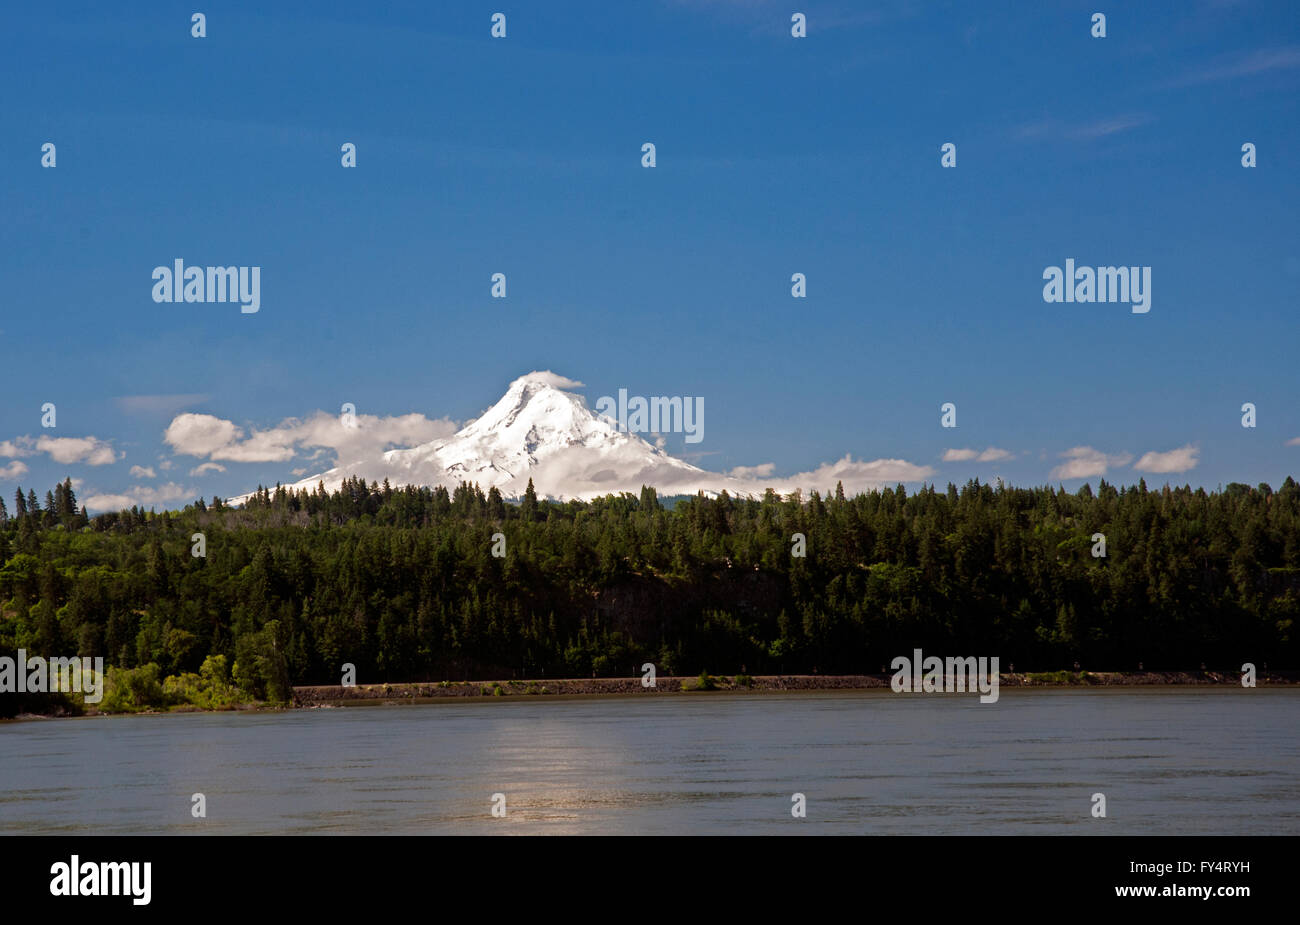 Mount Hood entnommen der Washingtoner Seite des Columbia River im Vordergrund angezeigt. Fast einem wolkenlosen Tag mit ein paar Wolken Stockfoto